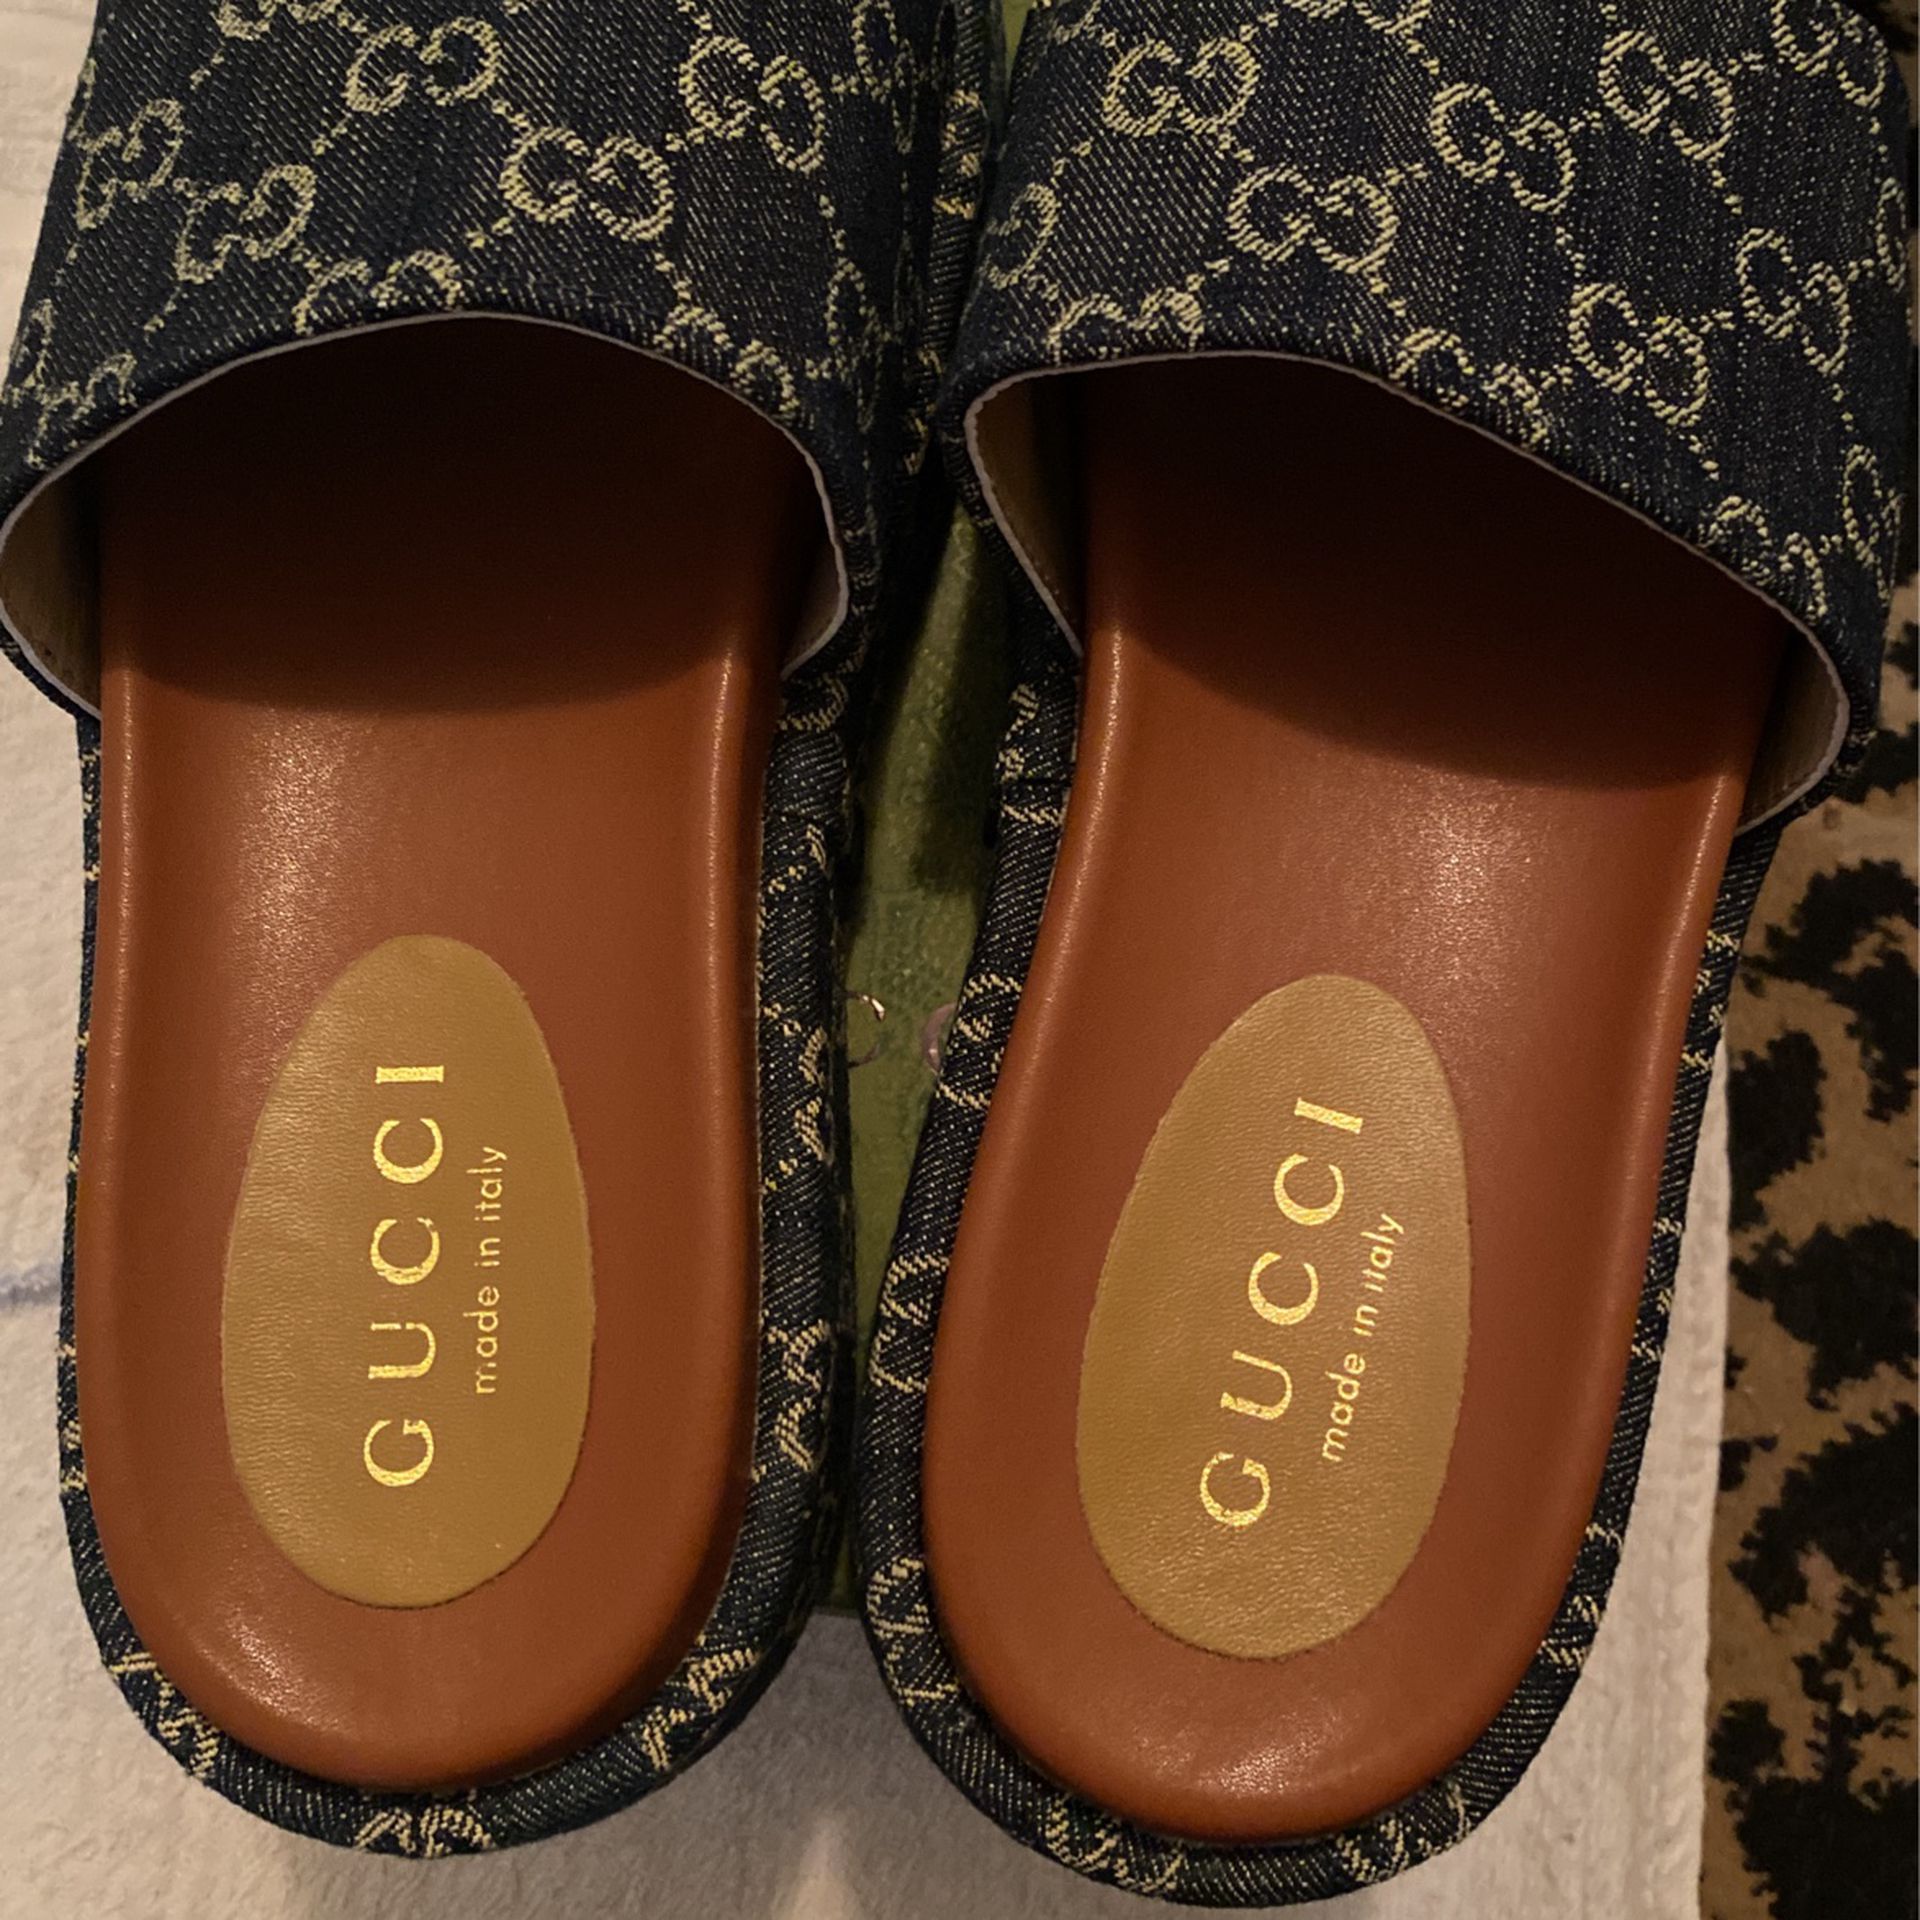 Gucci Platform Sandals